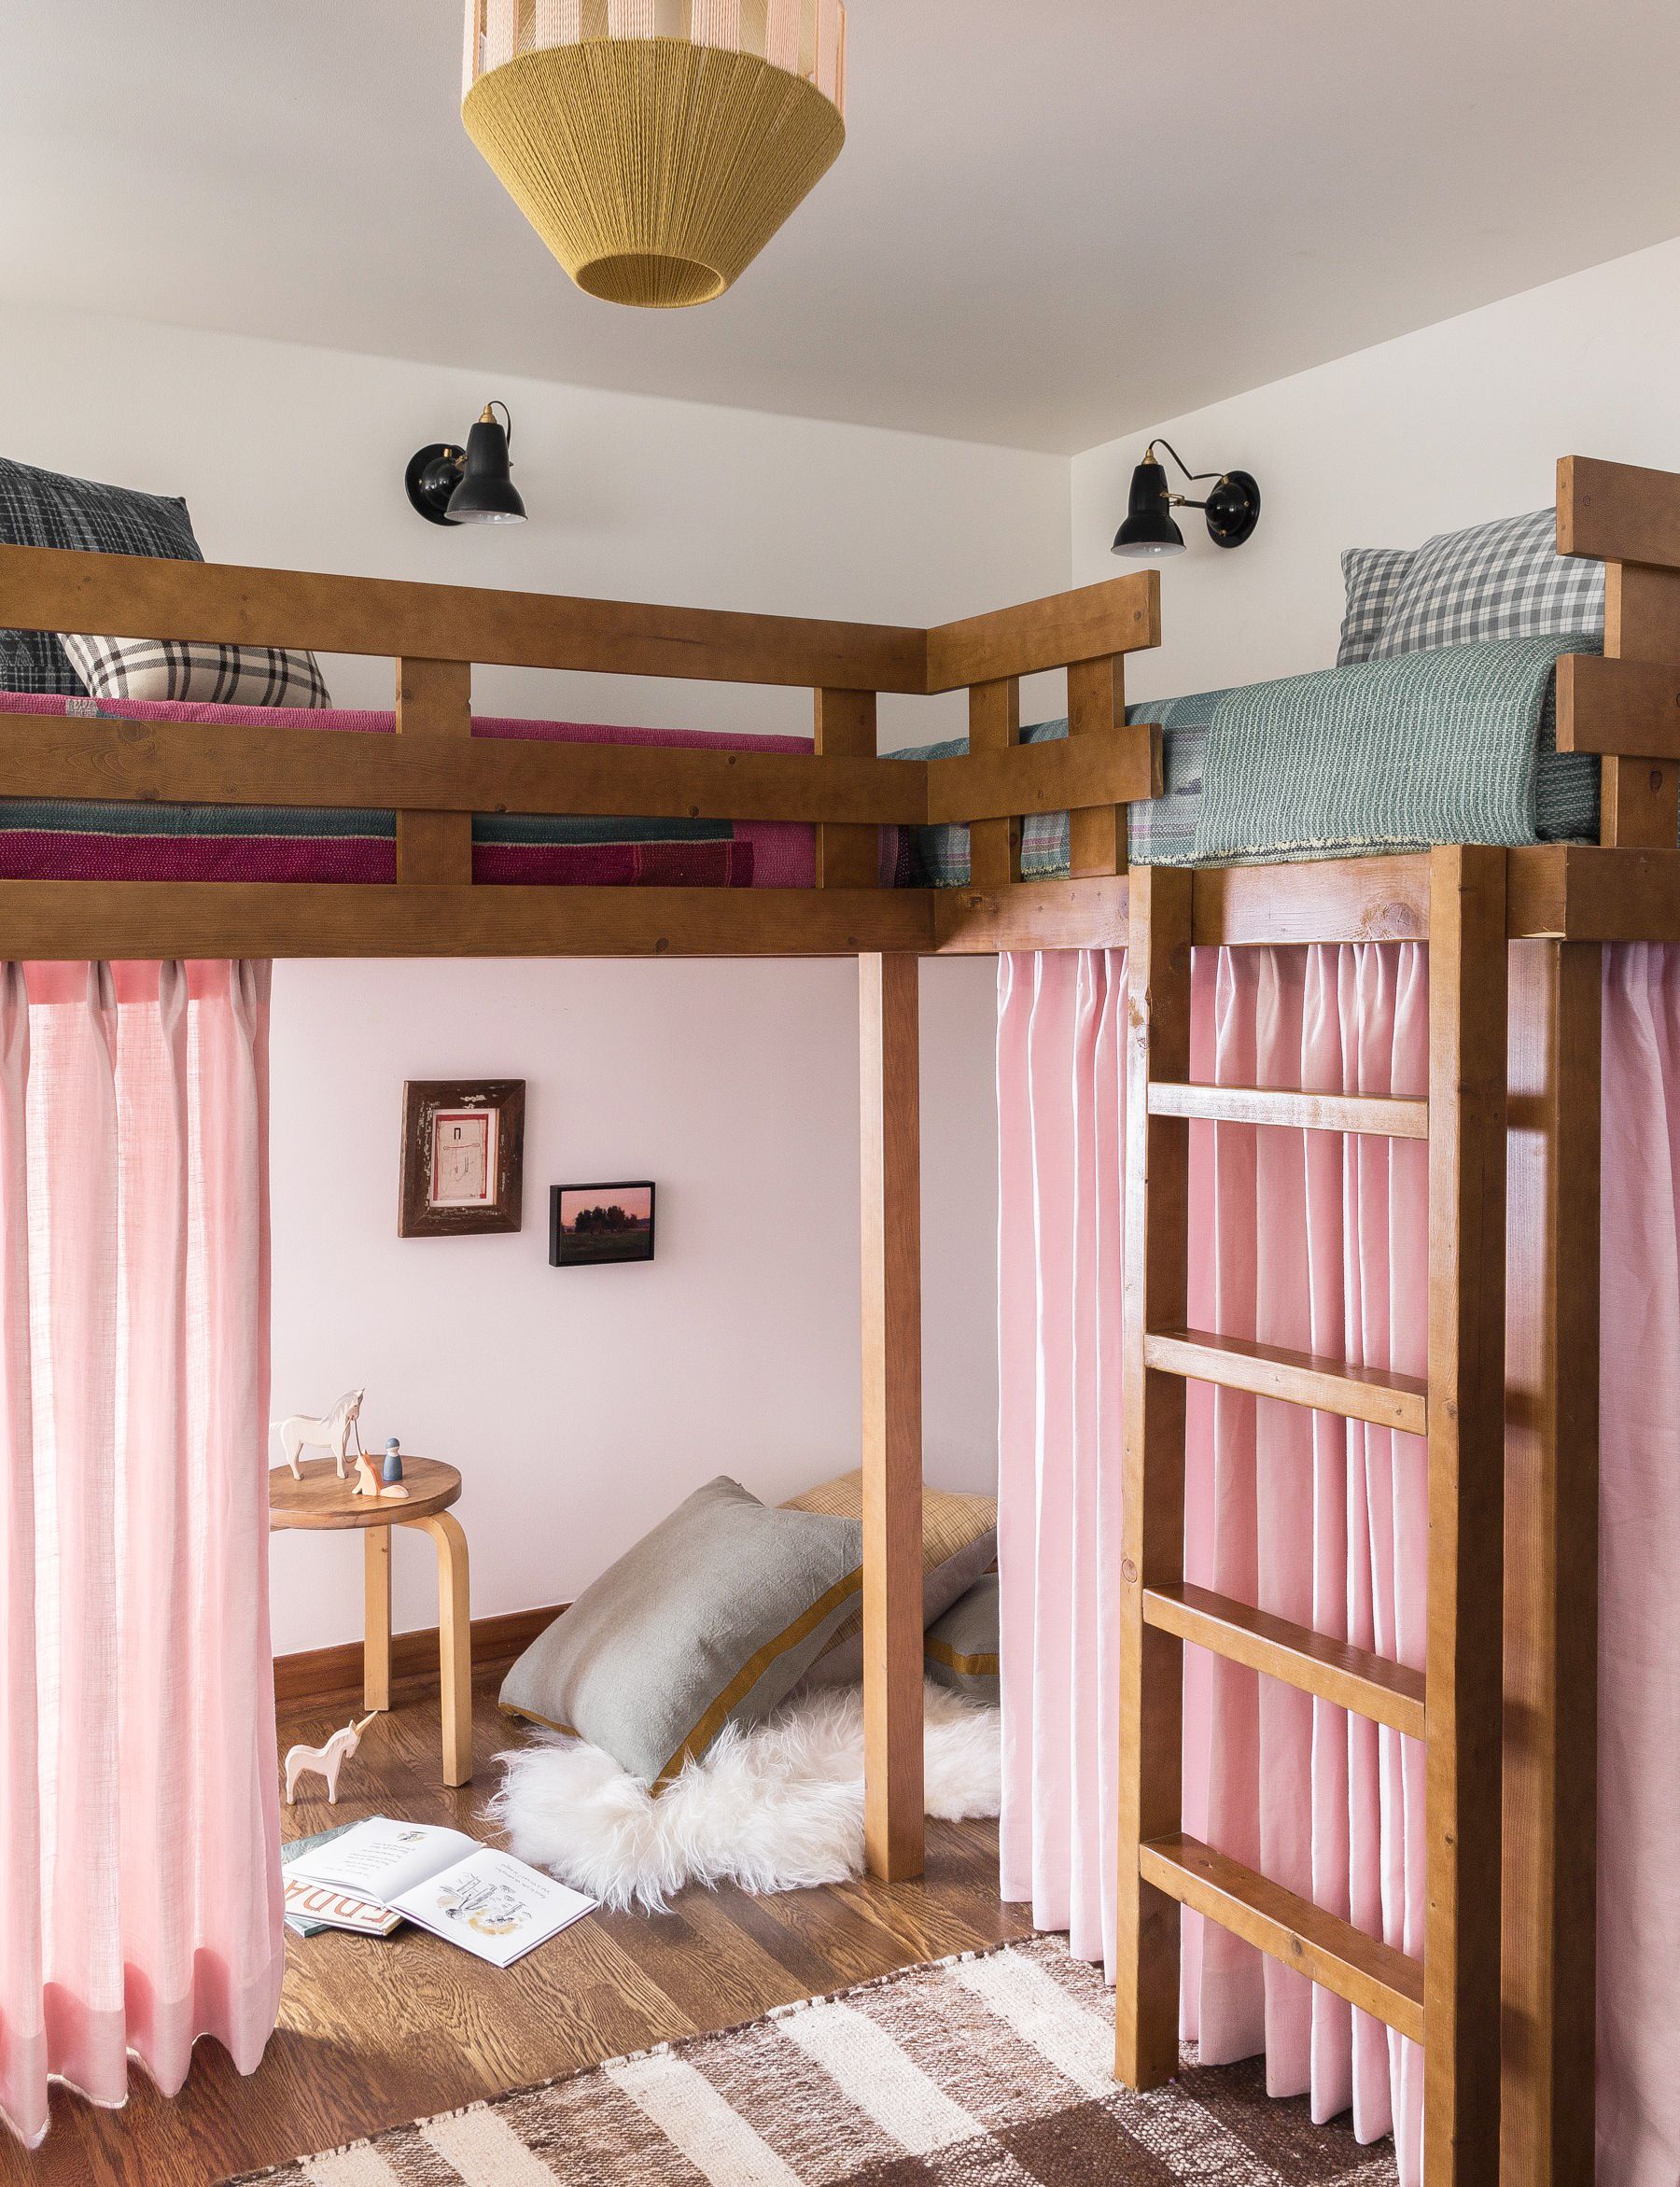 designer childrens beds